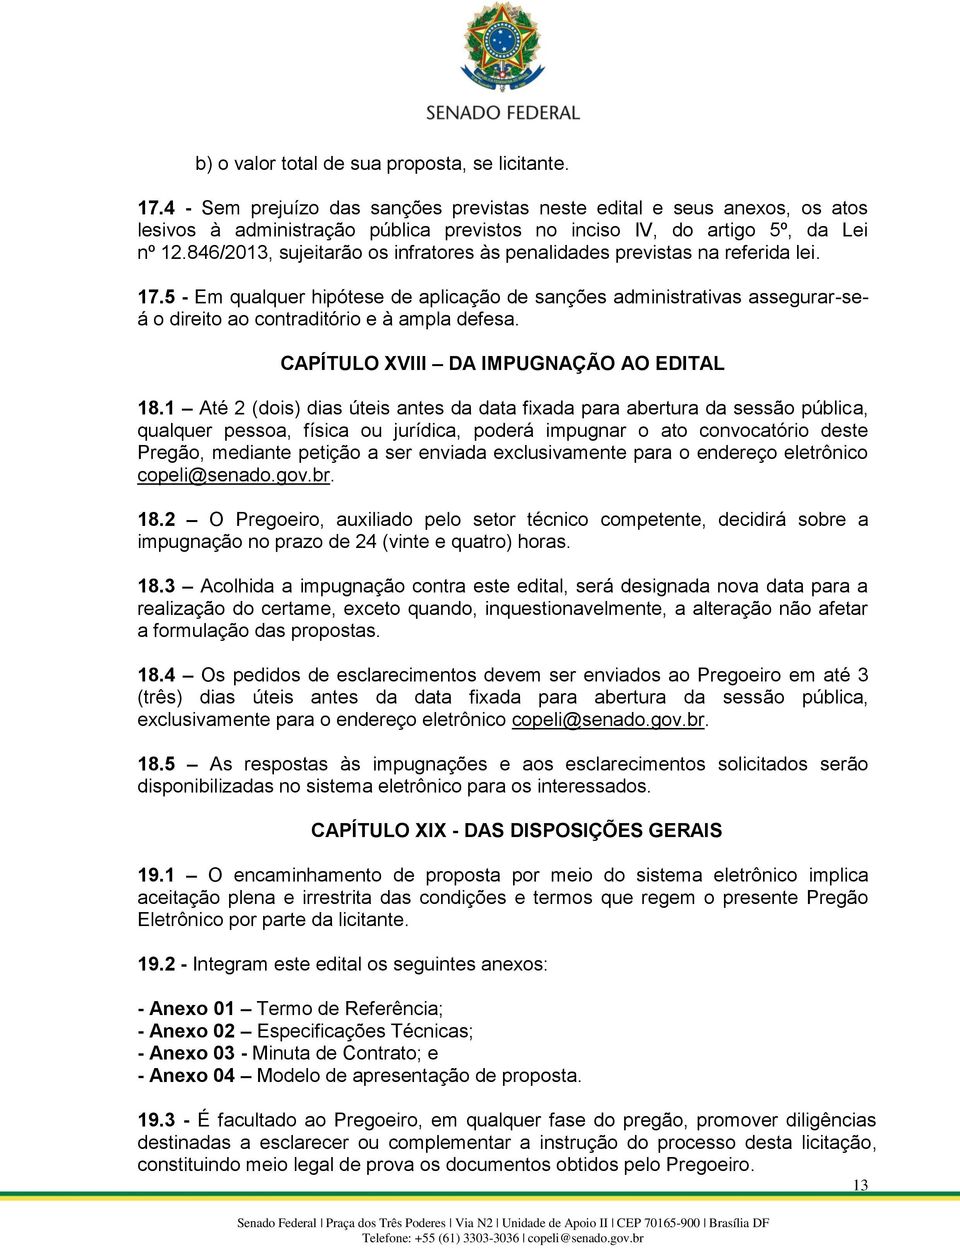 846/2013, sujeitarão os infratores às penalidades previstas na referida lei. 17.